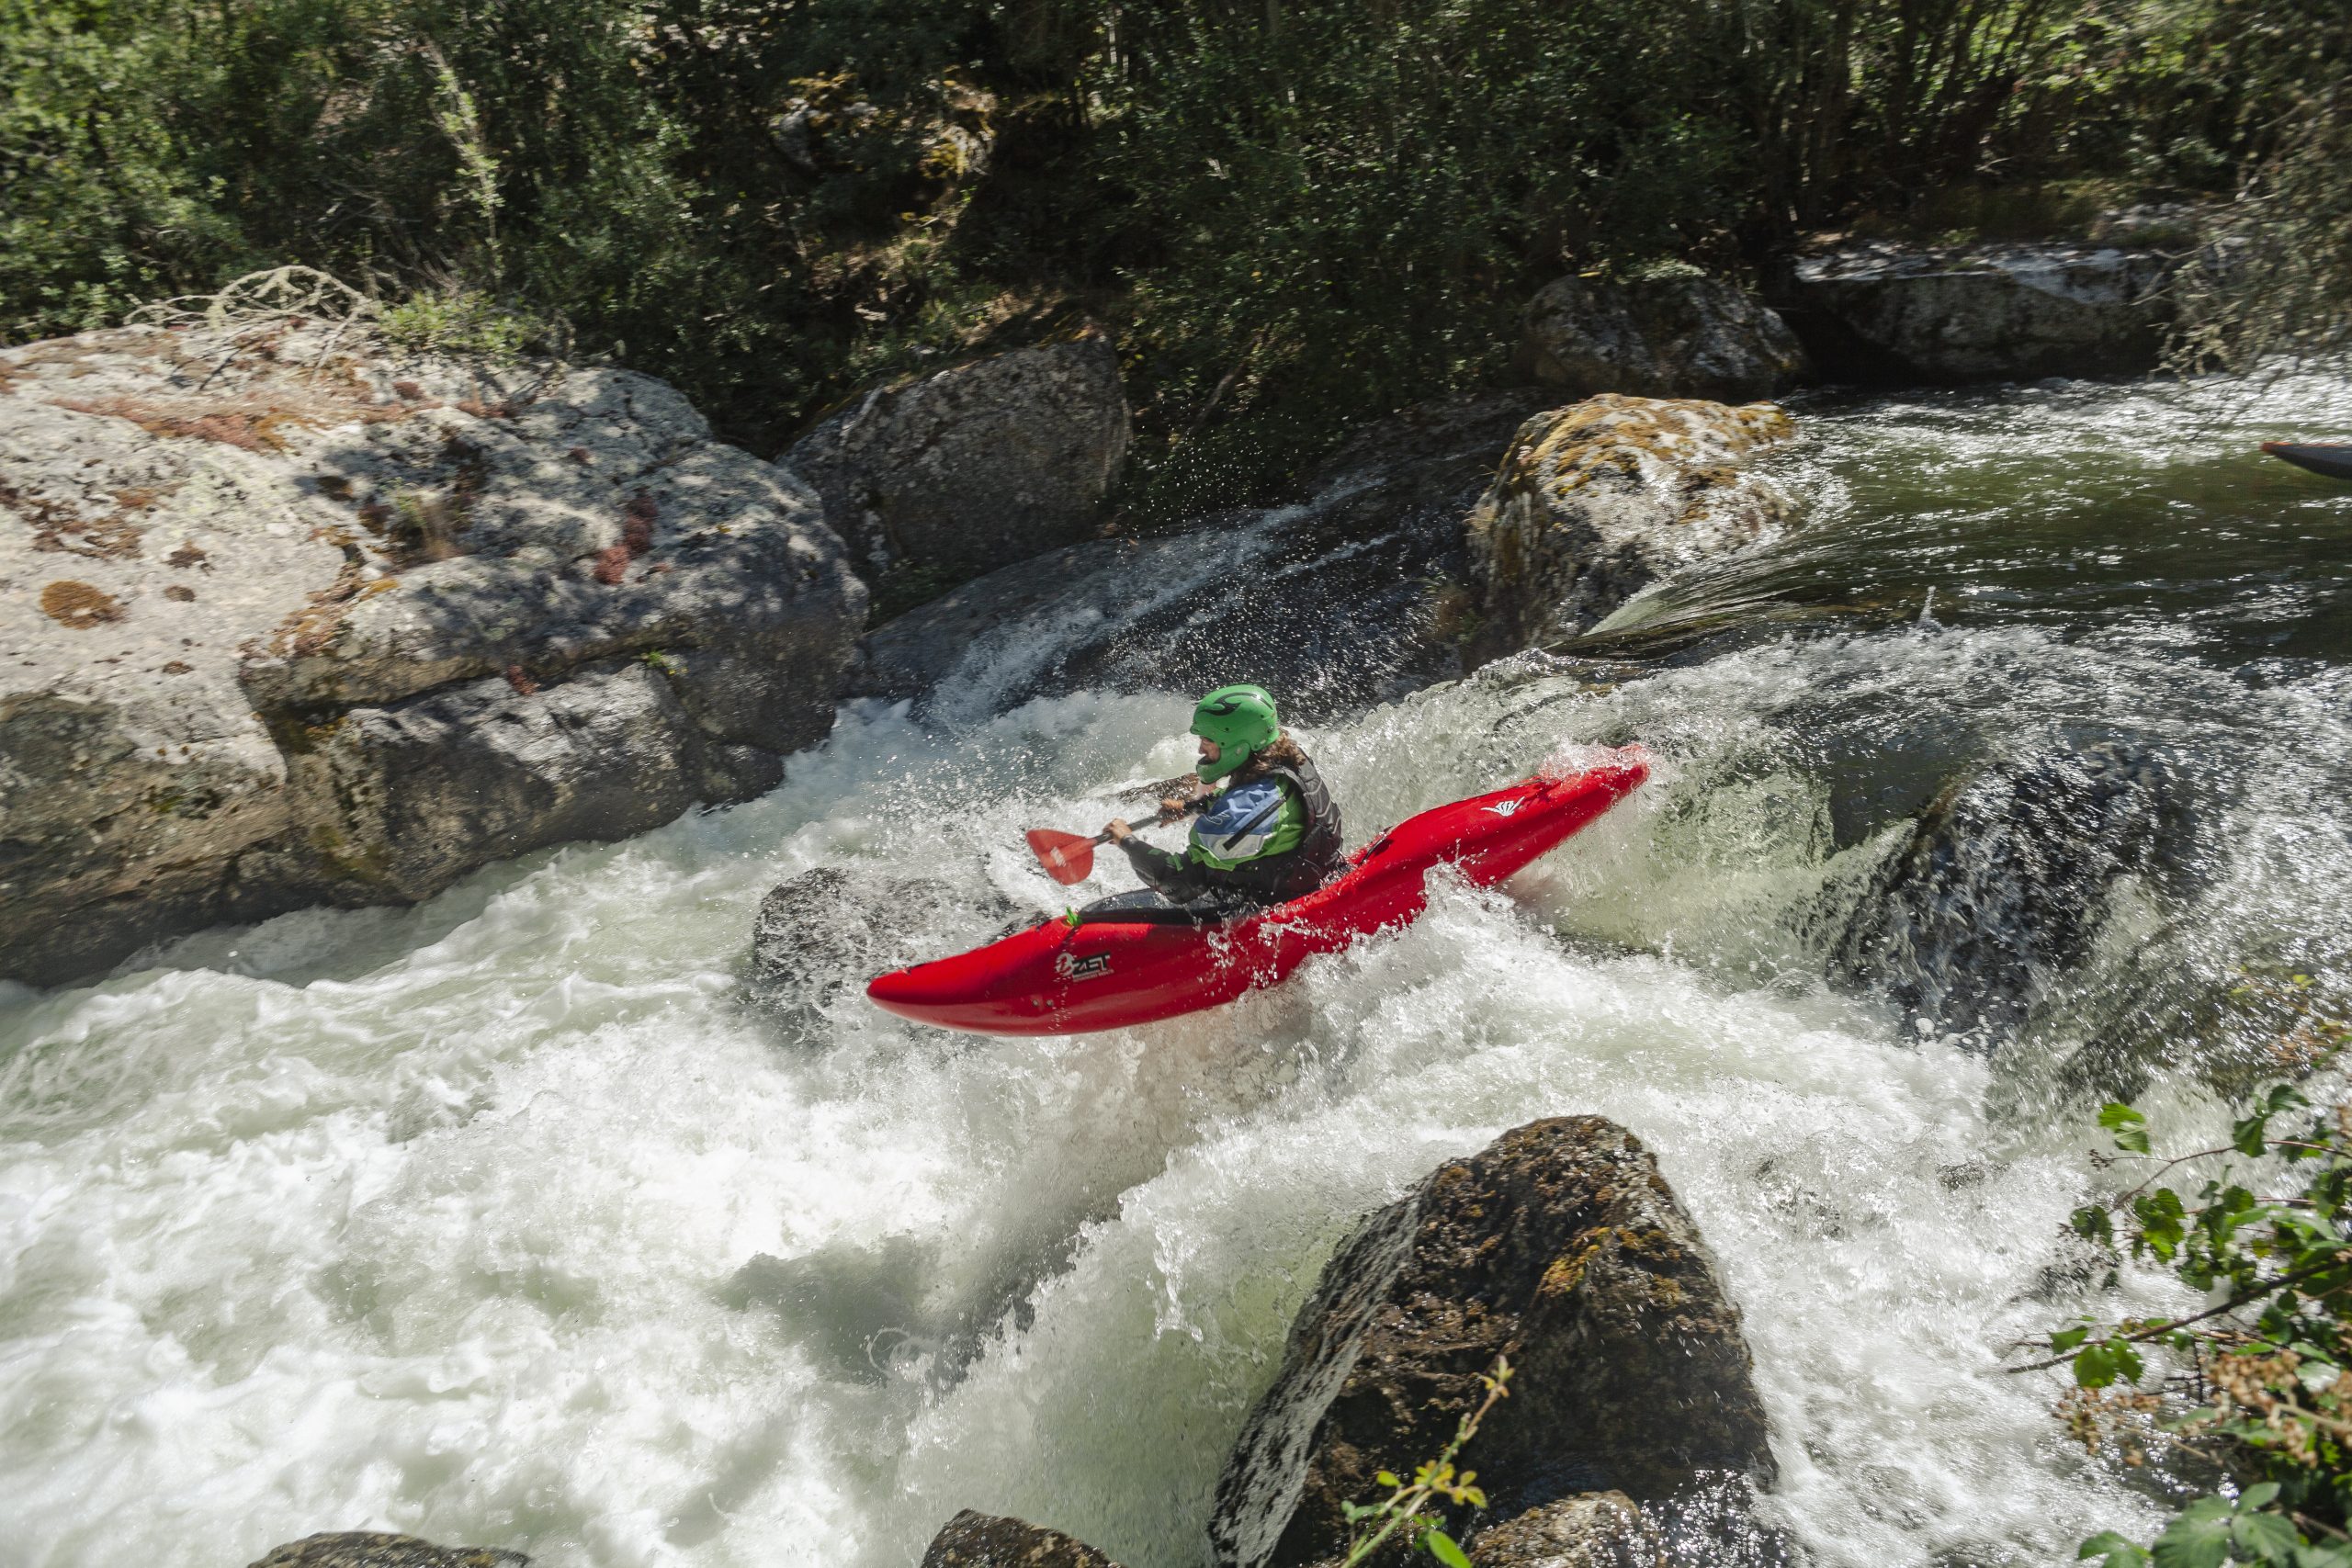 La Rampa. Río Piqueras. Descenso en piragua. XX competición de Kayak extremo. 24 de julio de 2022.
© Juan San Sebastián. Todos los derechos reservados.